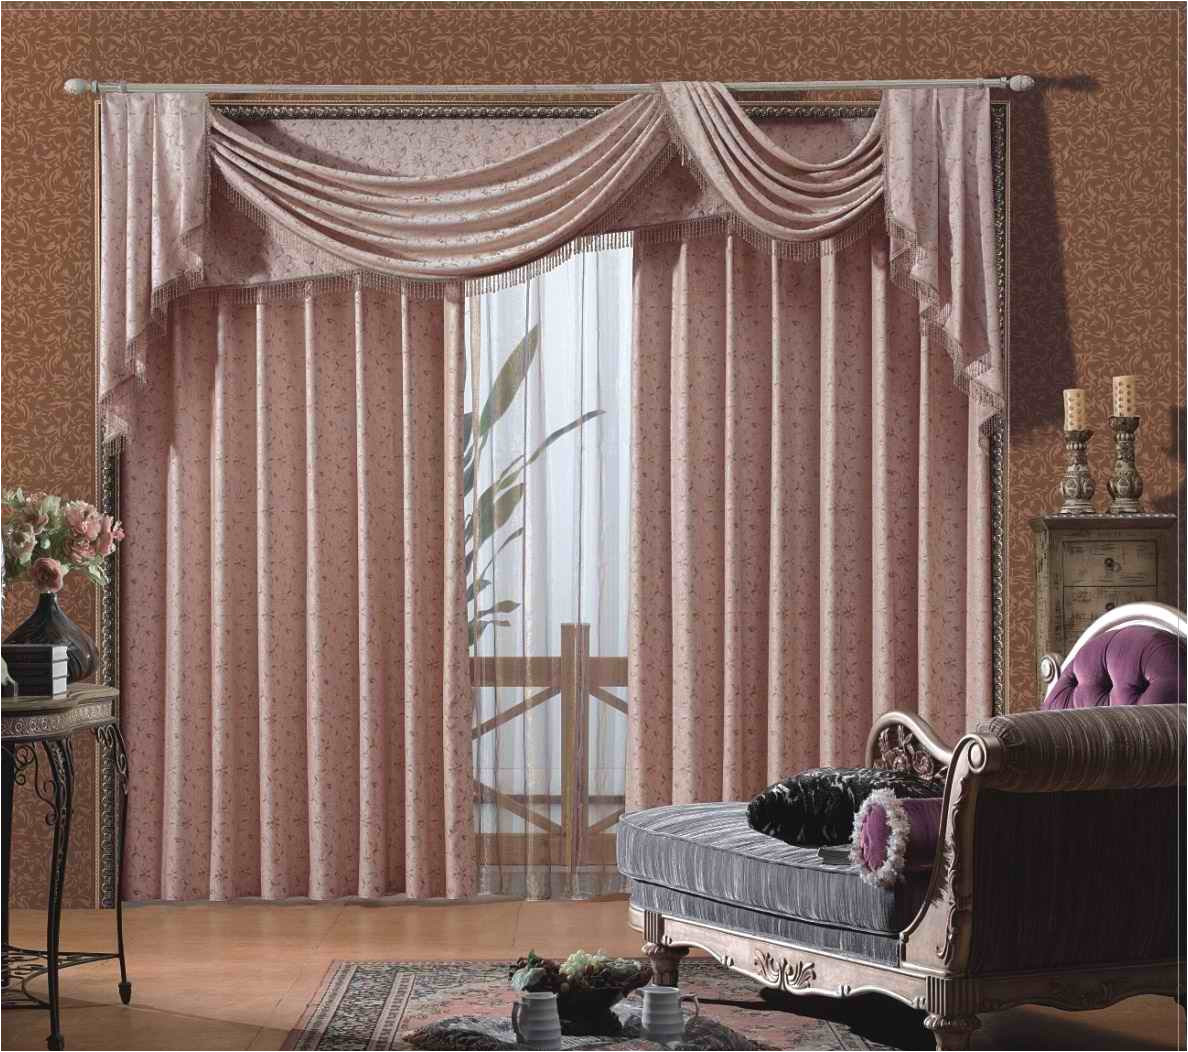 full size of el buen uso los estores y las cortinas imagenes elegantes para modernas salon with cortinas para salas modernas